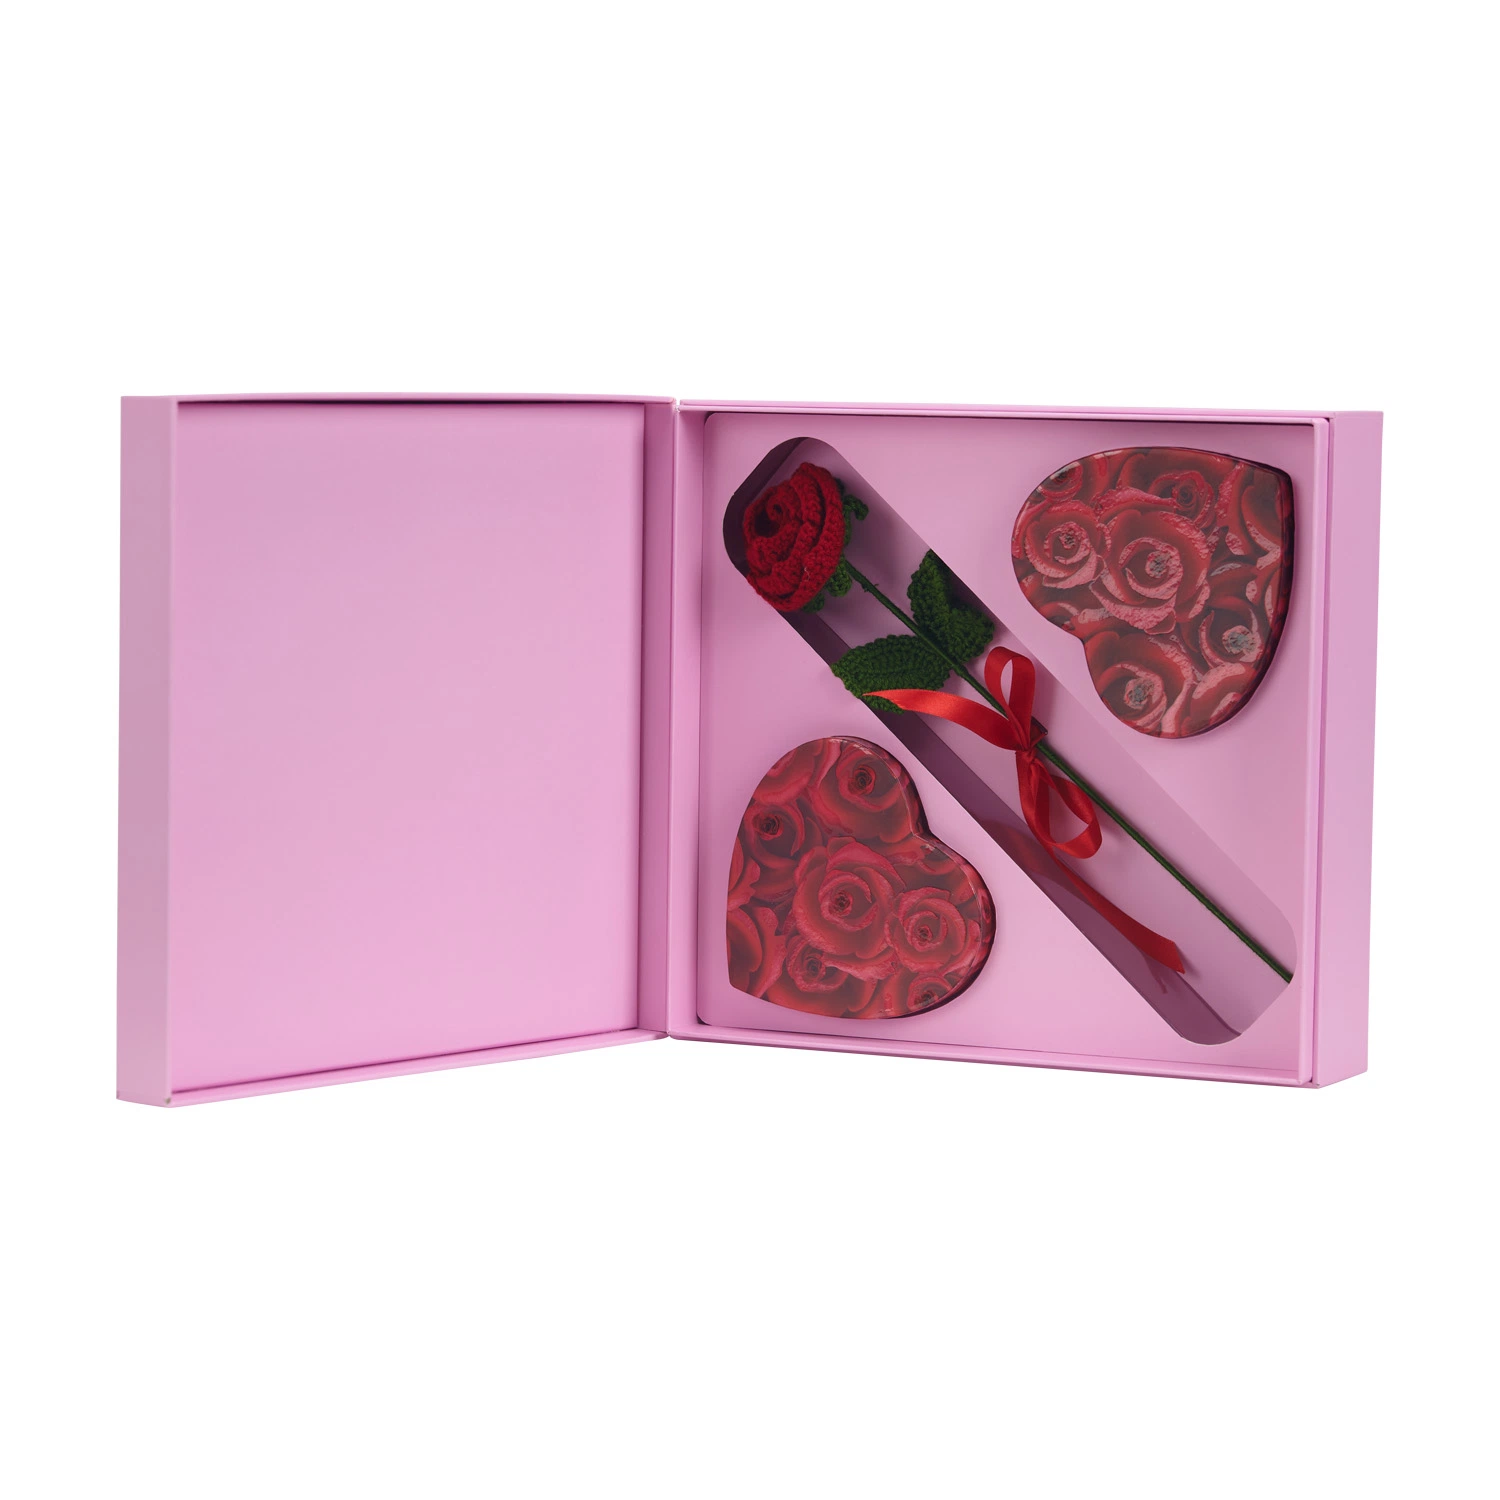 FSC Handmade starre Handwerk Box hohe Qualität Valentinstag Geschenk Verpackung Luxus Schokolade Boxen Kundenspezifische Verpackung Kosmetik Hautpflege Schmuck Box mit Rose